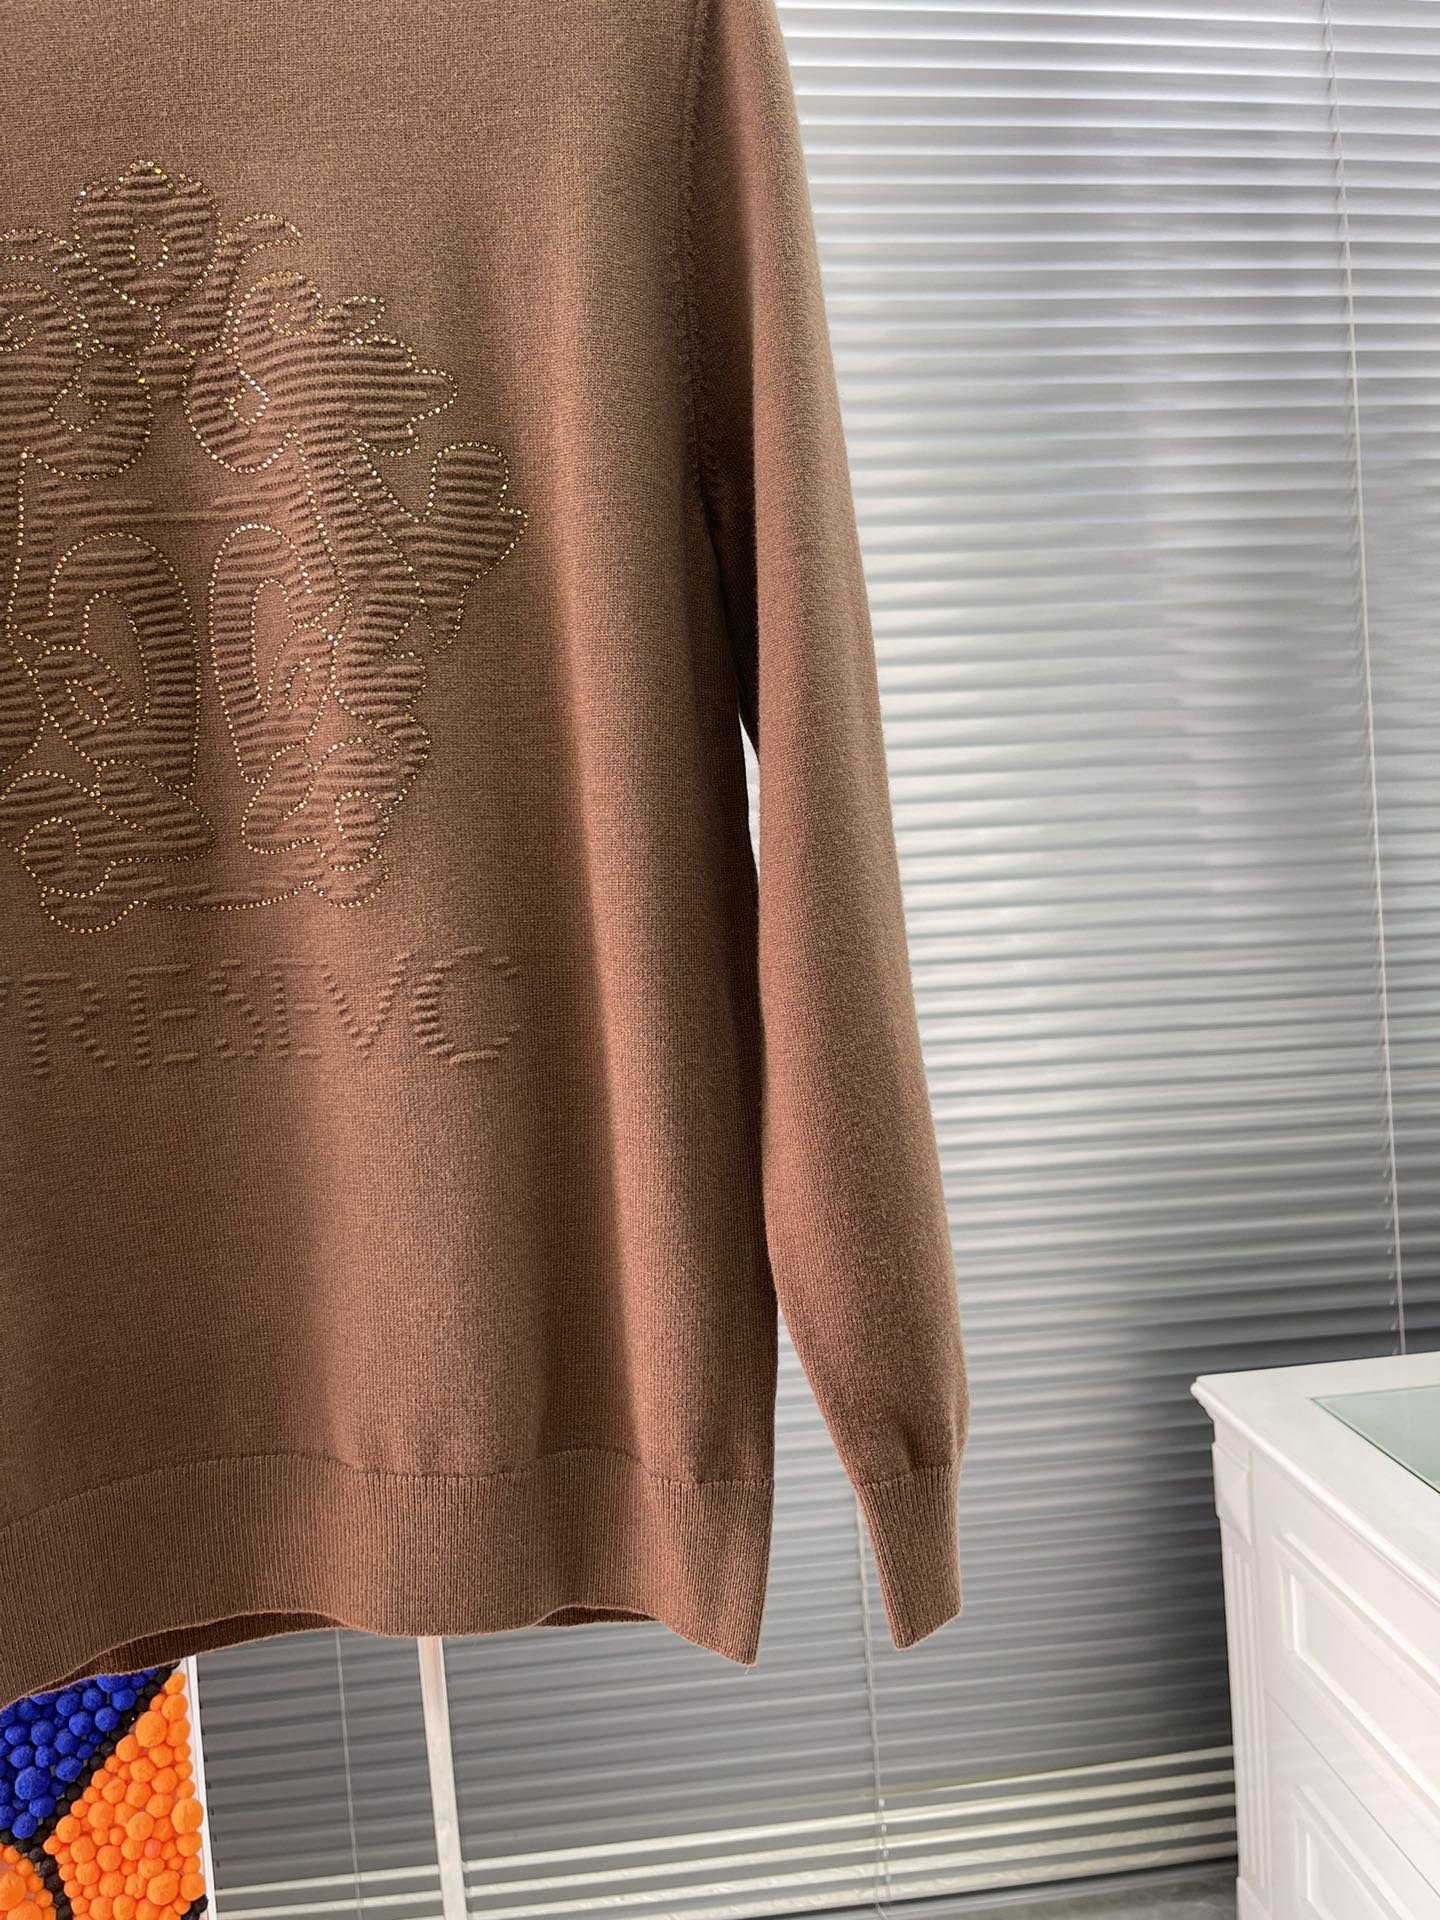 码数L-4XLVERSAC*范思哲2023秋季新款男士长袖毛衣品牌最新设计元素！既不单调也不复杂,恰到好